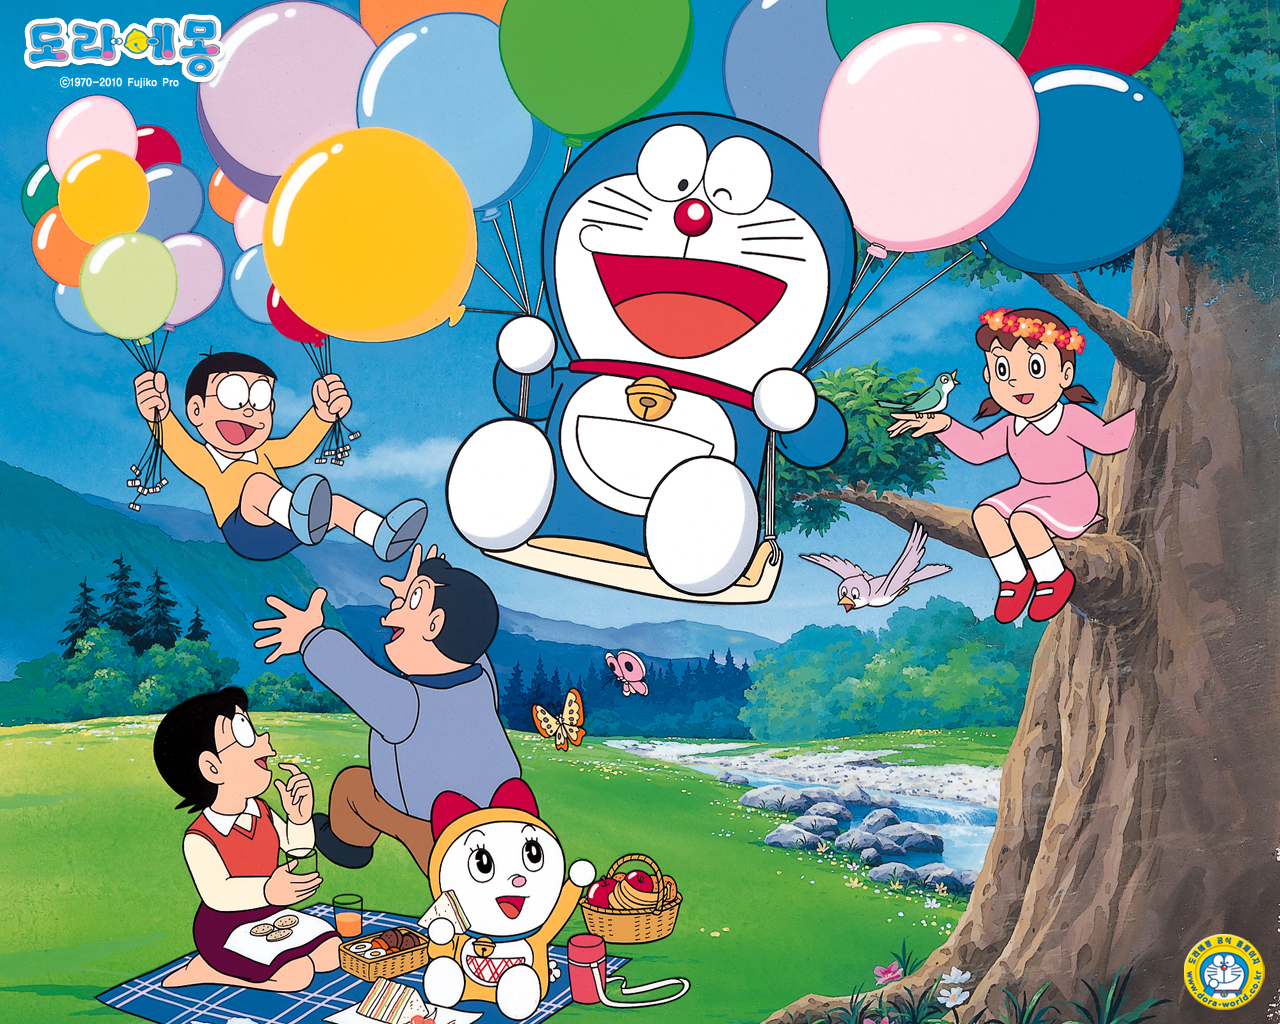  Gambar Wallpaper Doraemon Terbaru Kampung Wallpaper